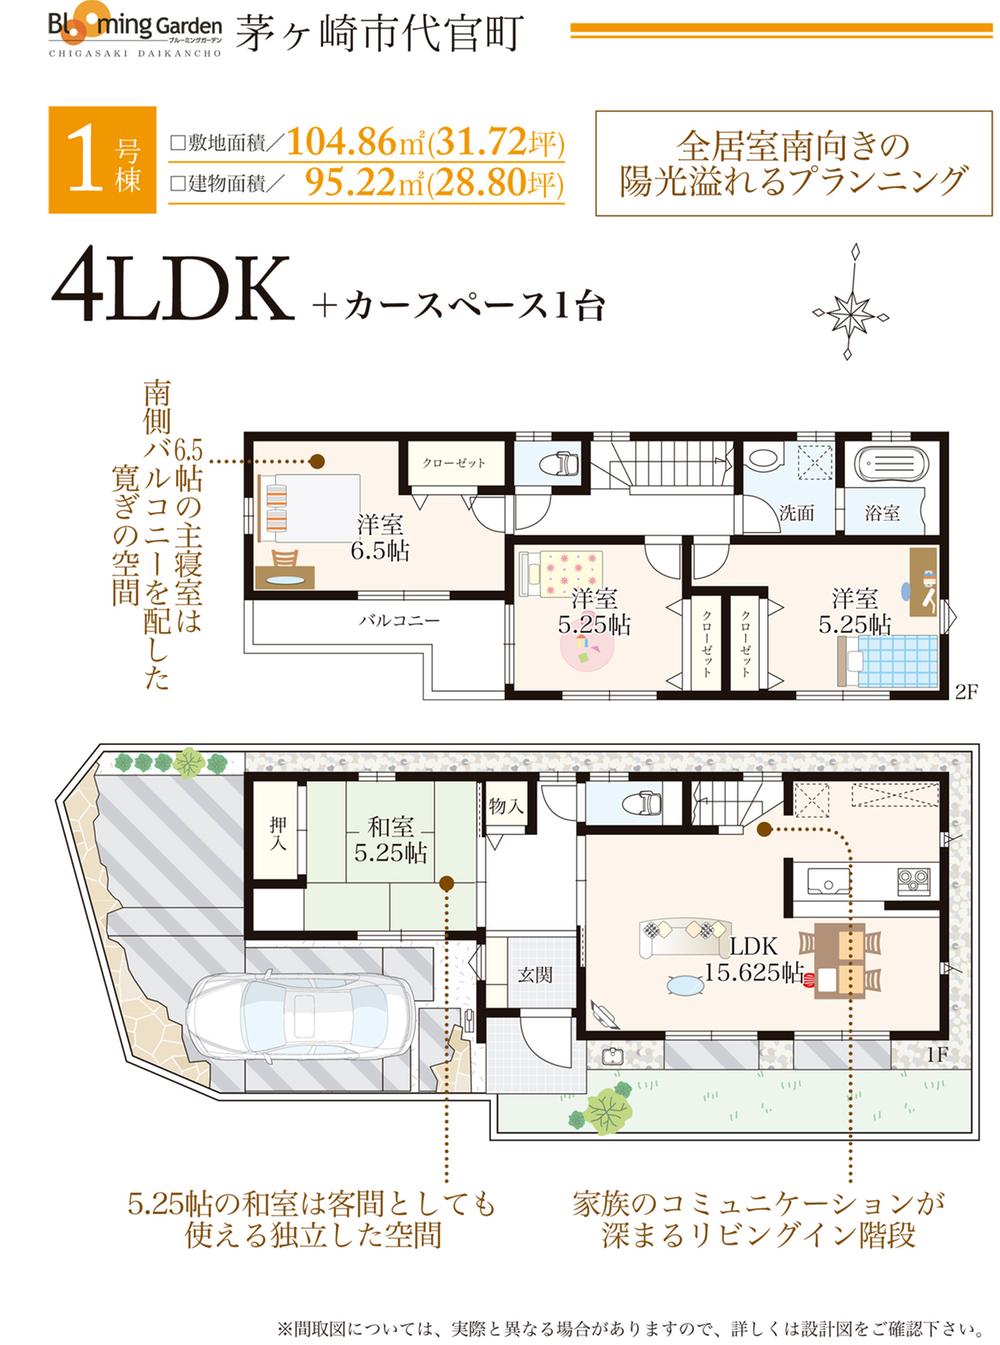 Floor plan. ○ 1 Building: floor plan